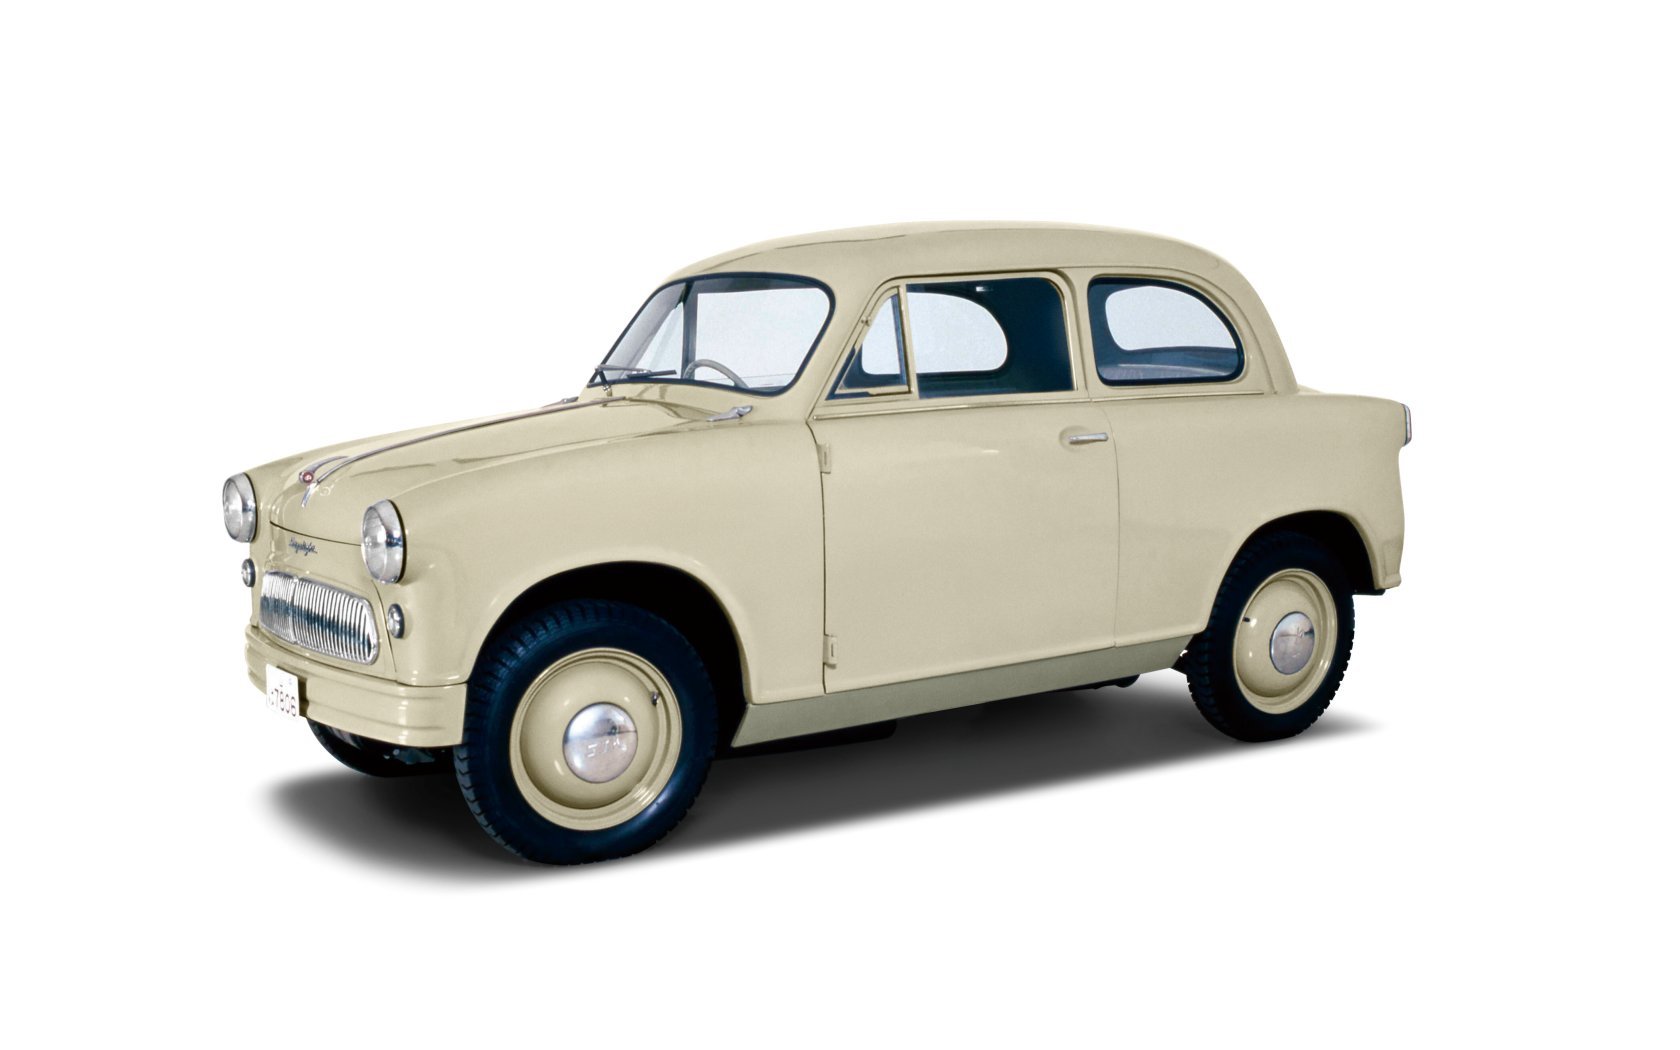 Suzulight SS z roku 1955 bylo prvním sériovým automobilem značky Suzuki